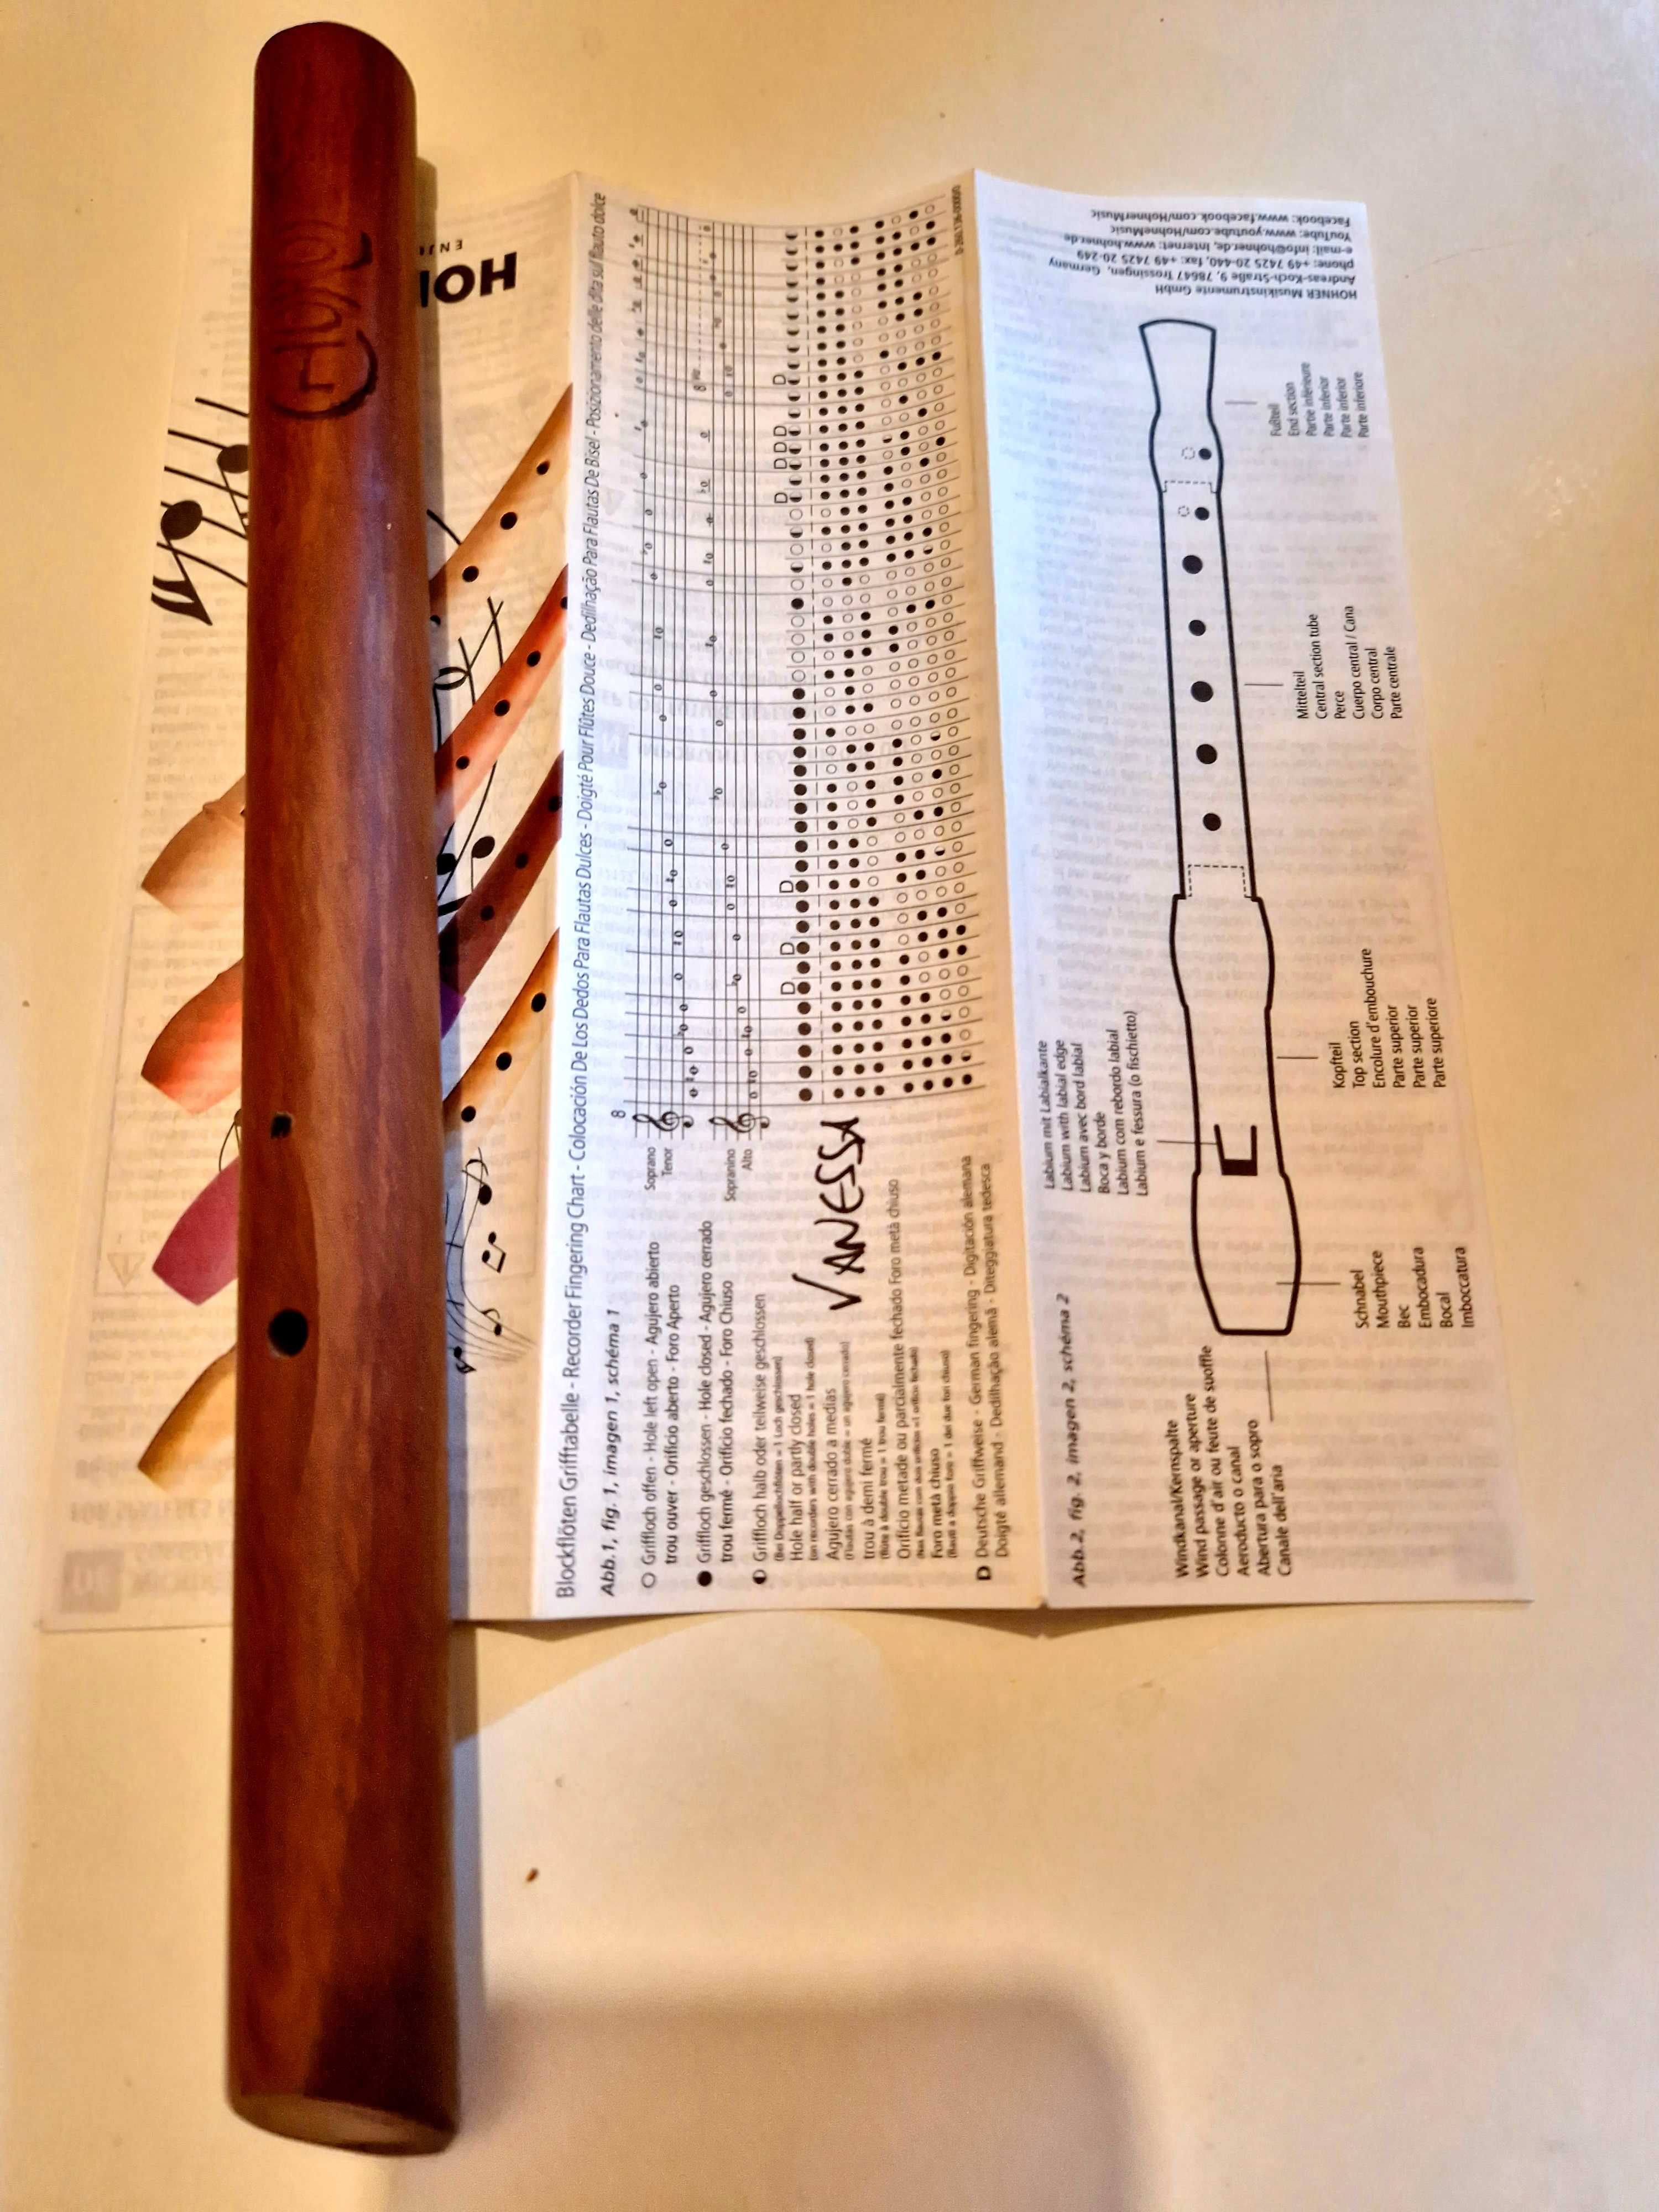 Flauta de bisel Hohner semi-nova